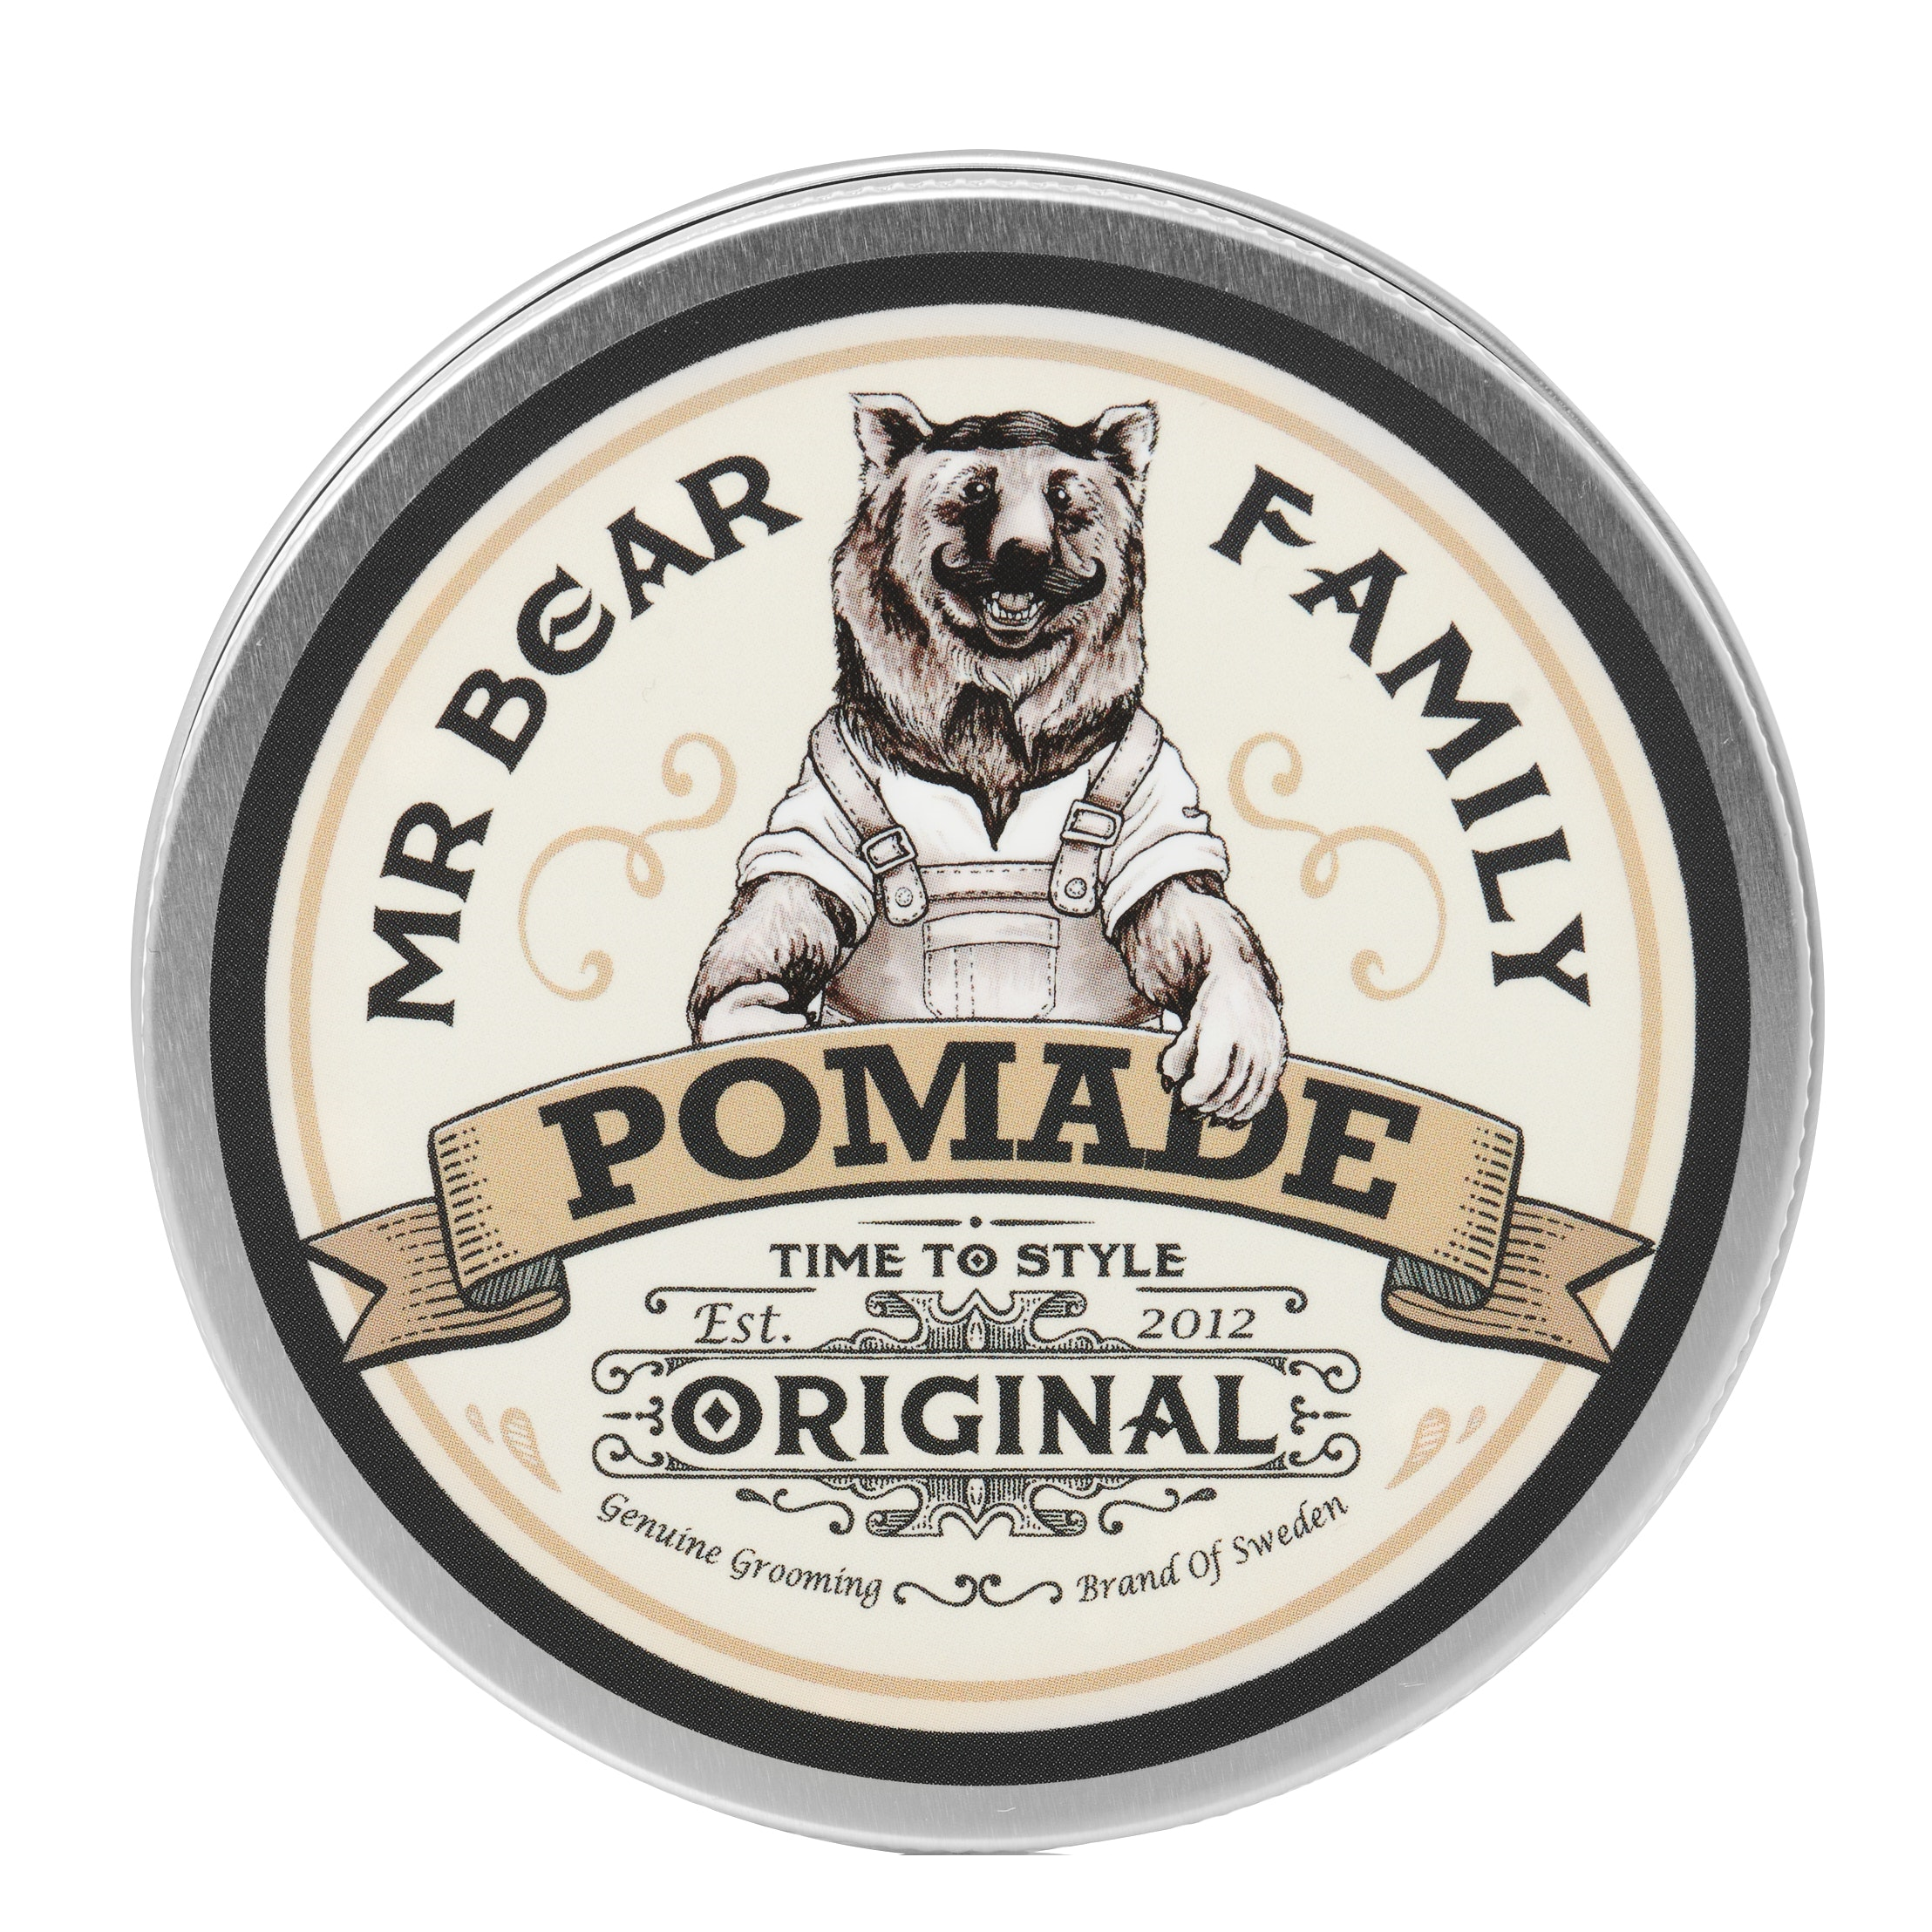 Mr Bear Family Pomade - Original